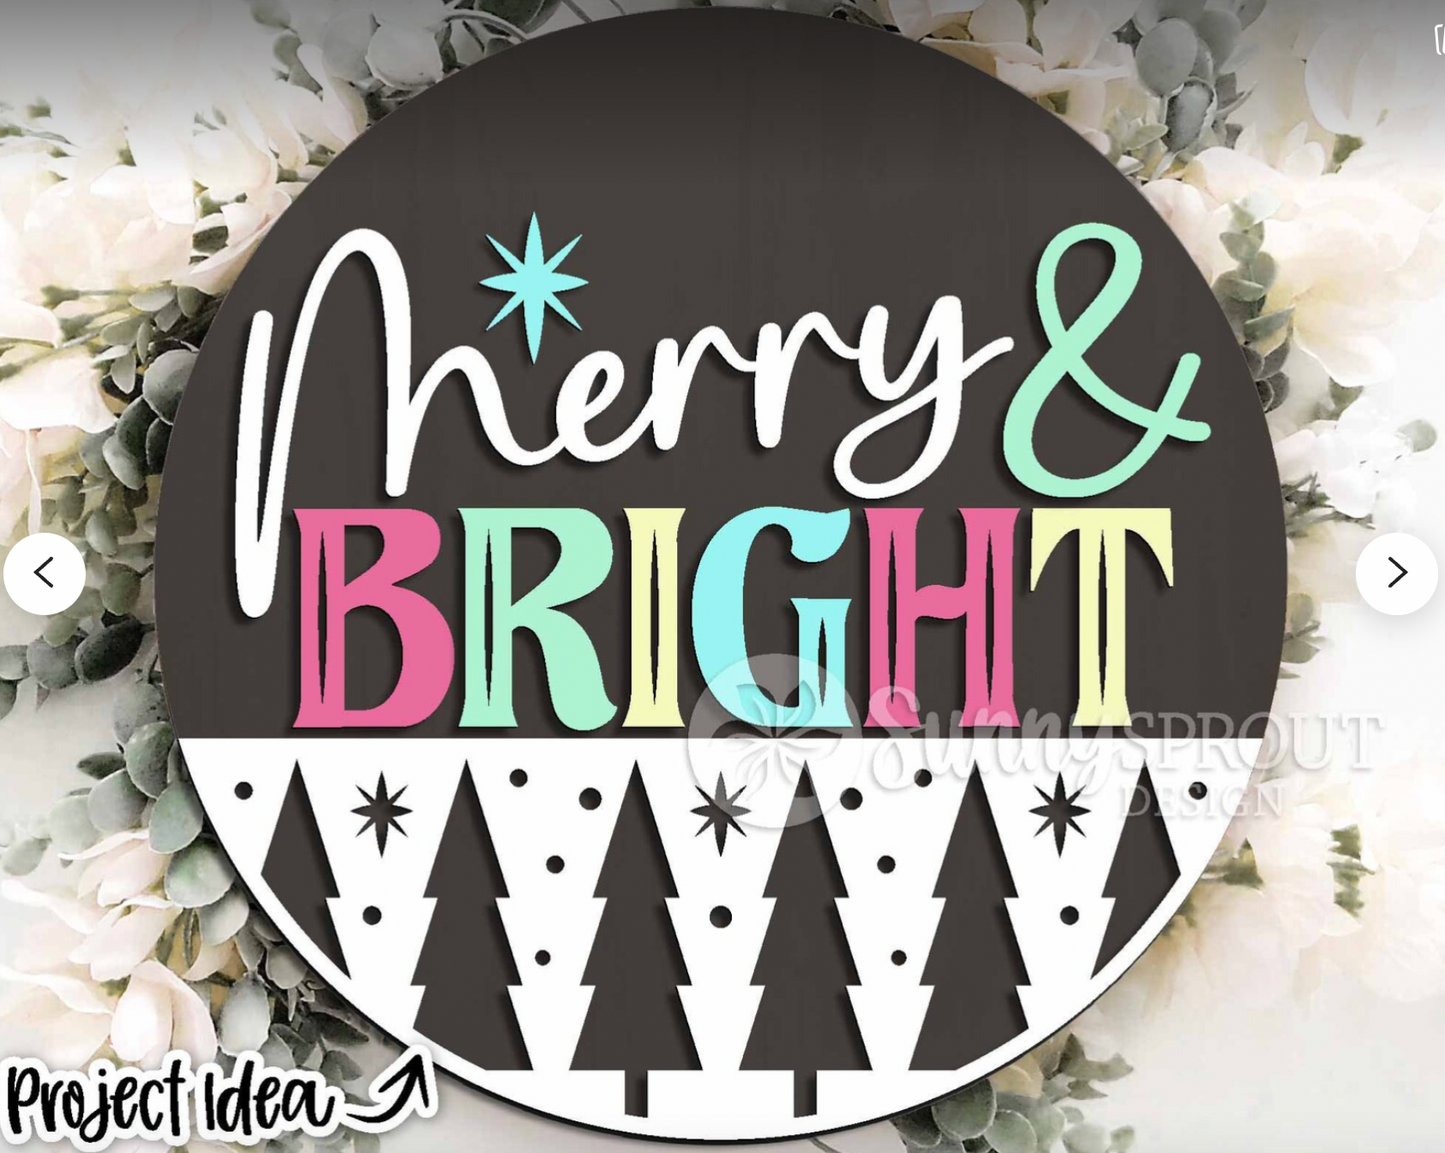 Merry & Bright Round